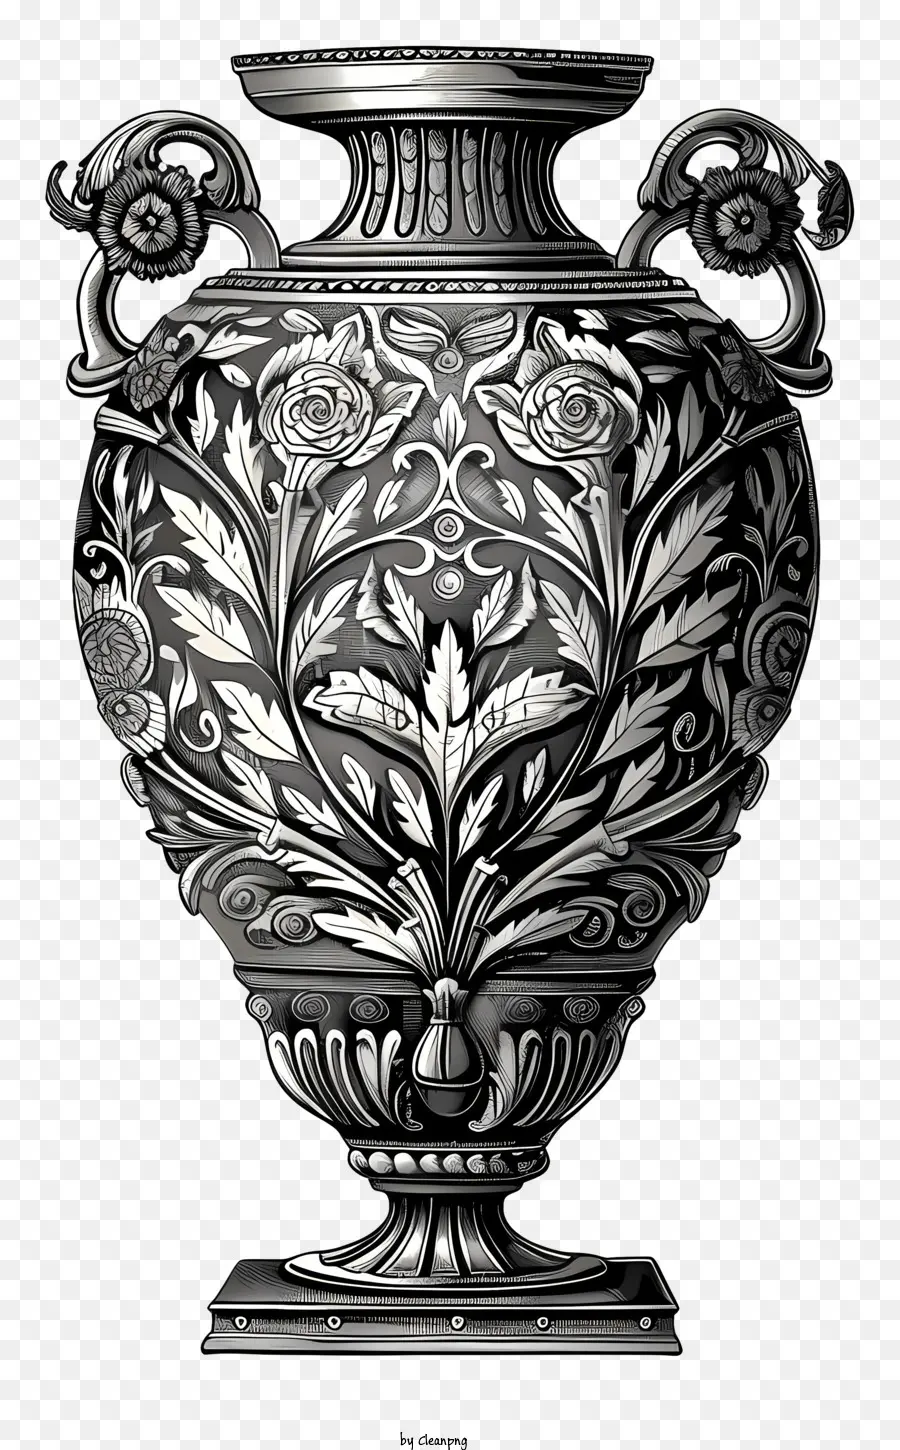 Bình hoa Bình bạc Roman Design Thiết kế trang trí hoa mẫu hoa chi tiết phức tạp - Minh họa màu đen và trắng của bình bạc trang trí công phu